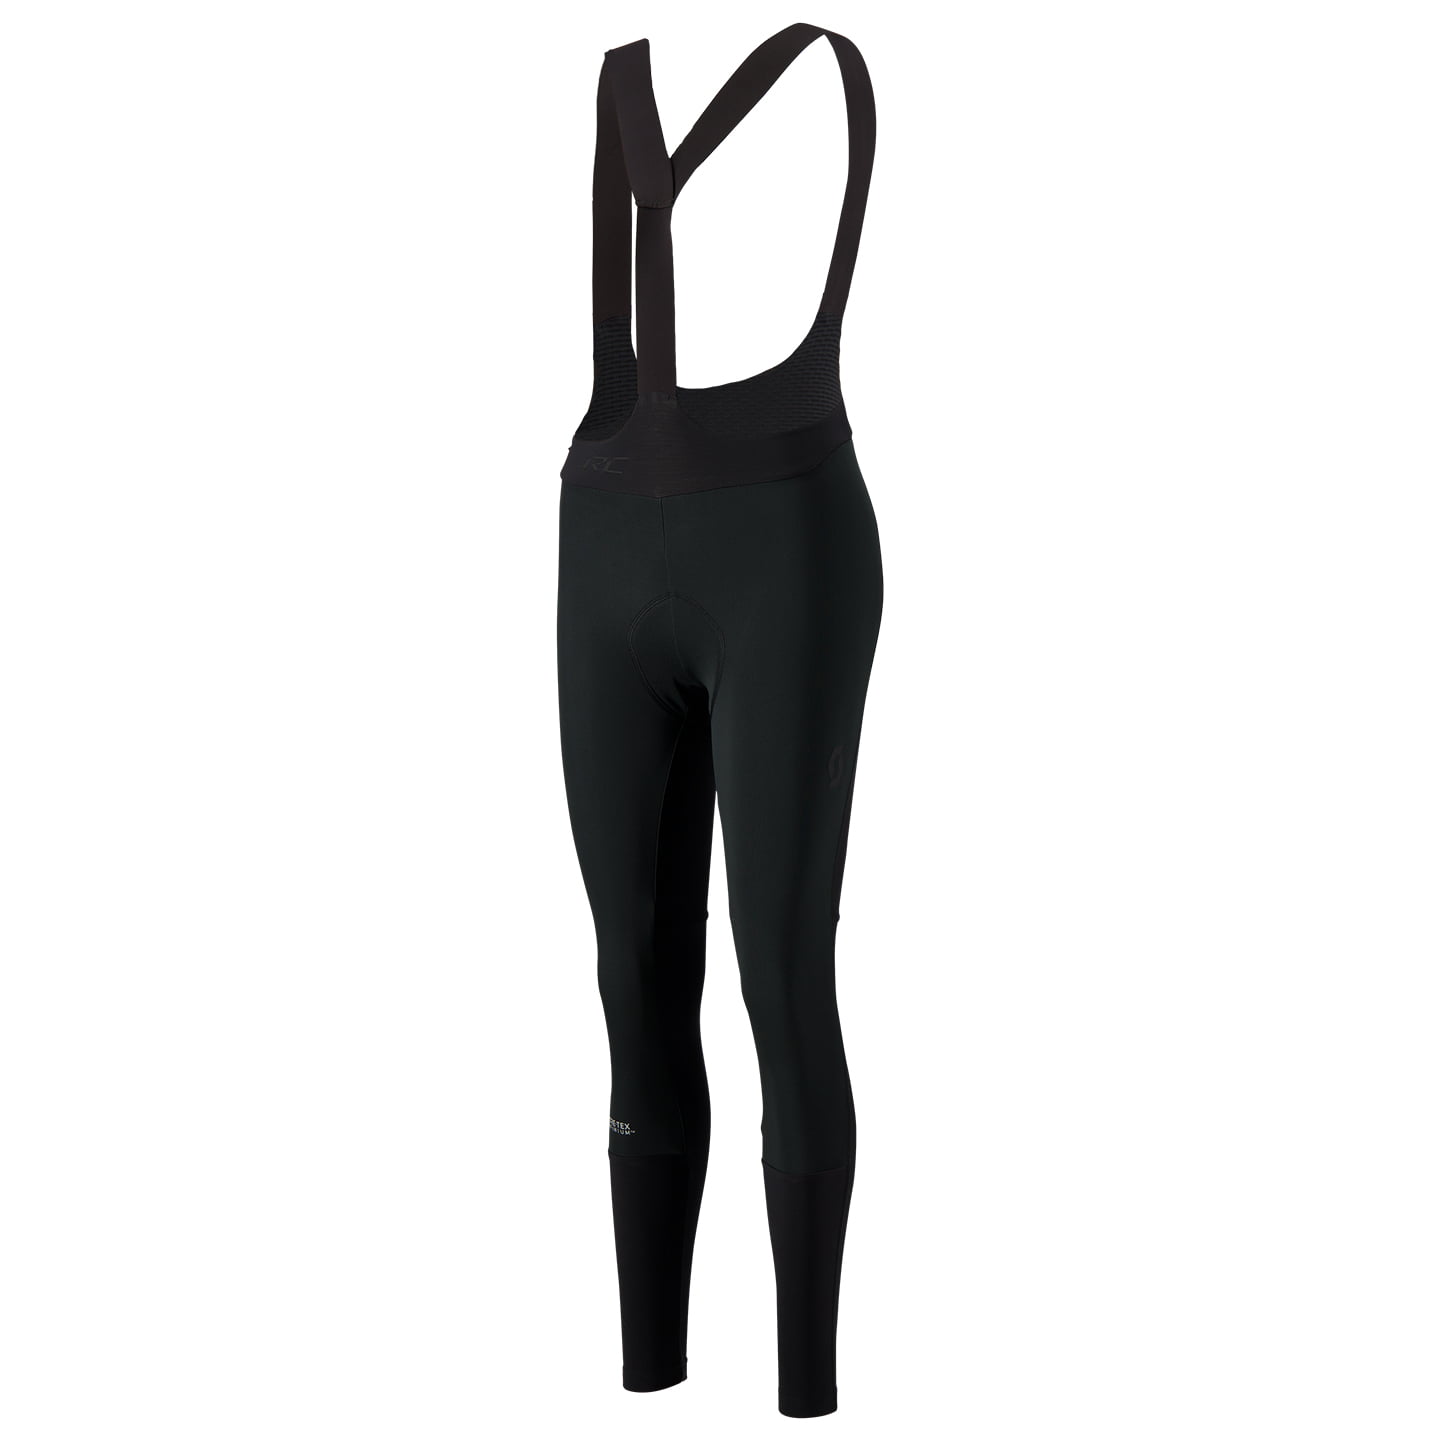 SCOTT long women’s bib shorts RC Warm GTX Bib Tights, size M, Cycle tights, Cycling clothing